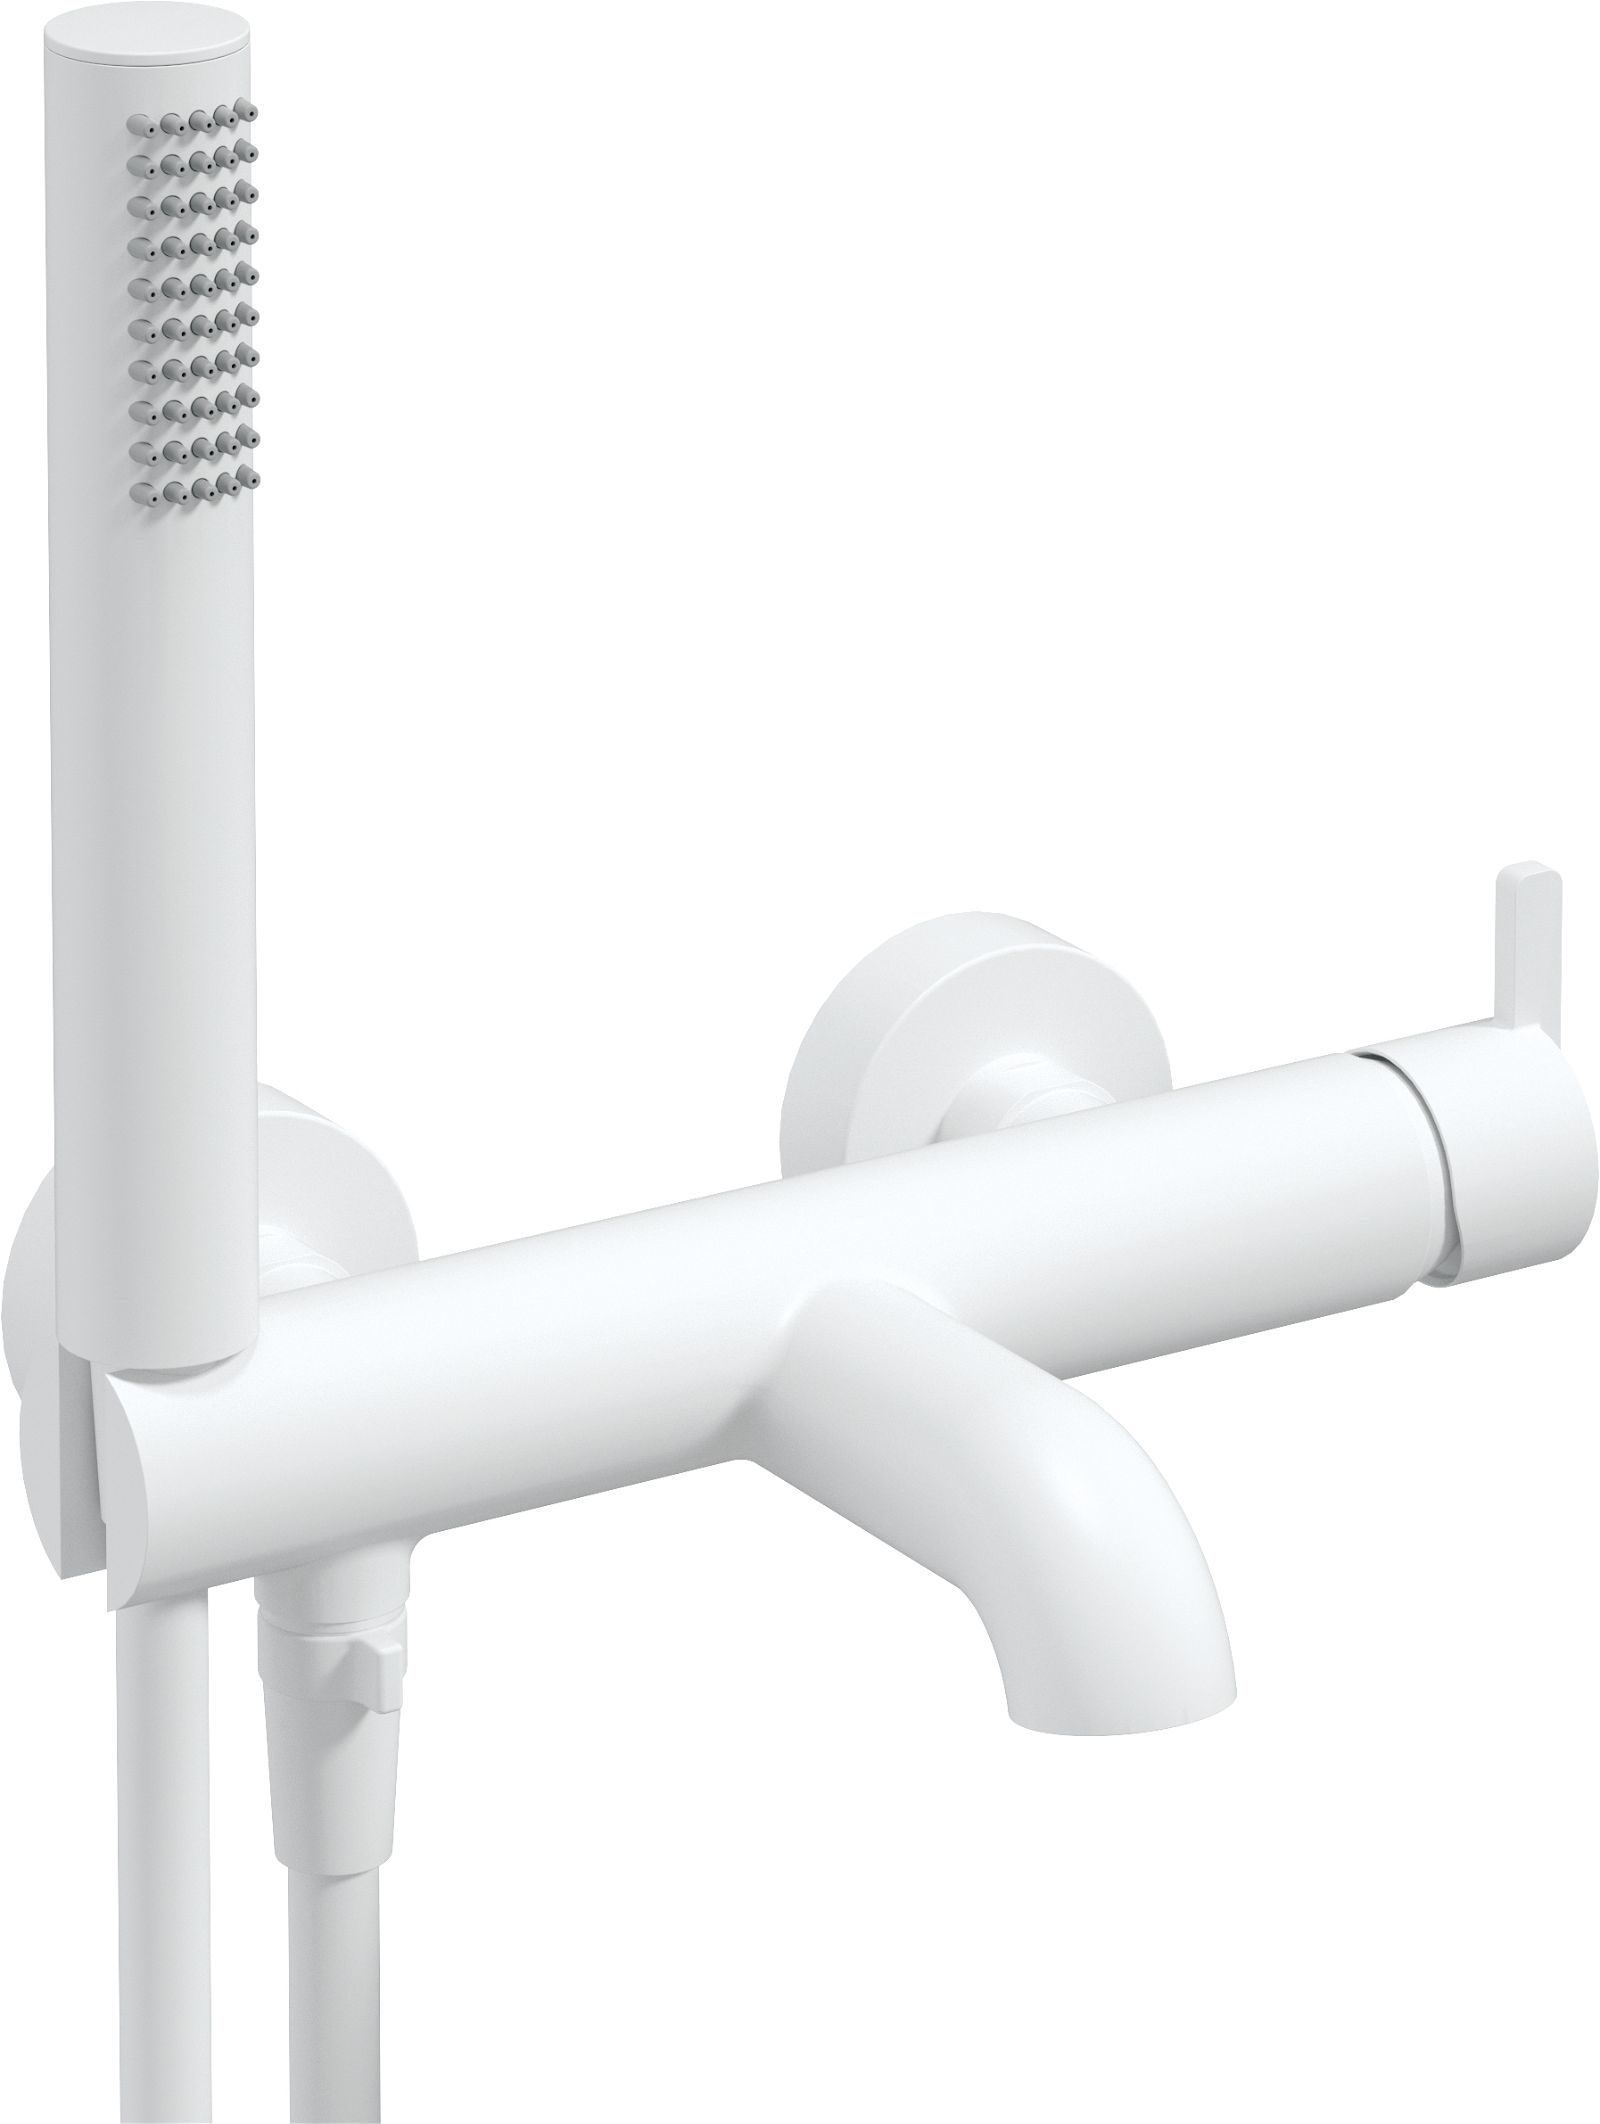 Kádtöltő csaptelep, zuhanyszettel - BQS_A11M - Główne zdjęcie produktowe